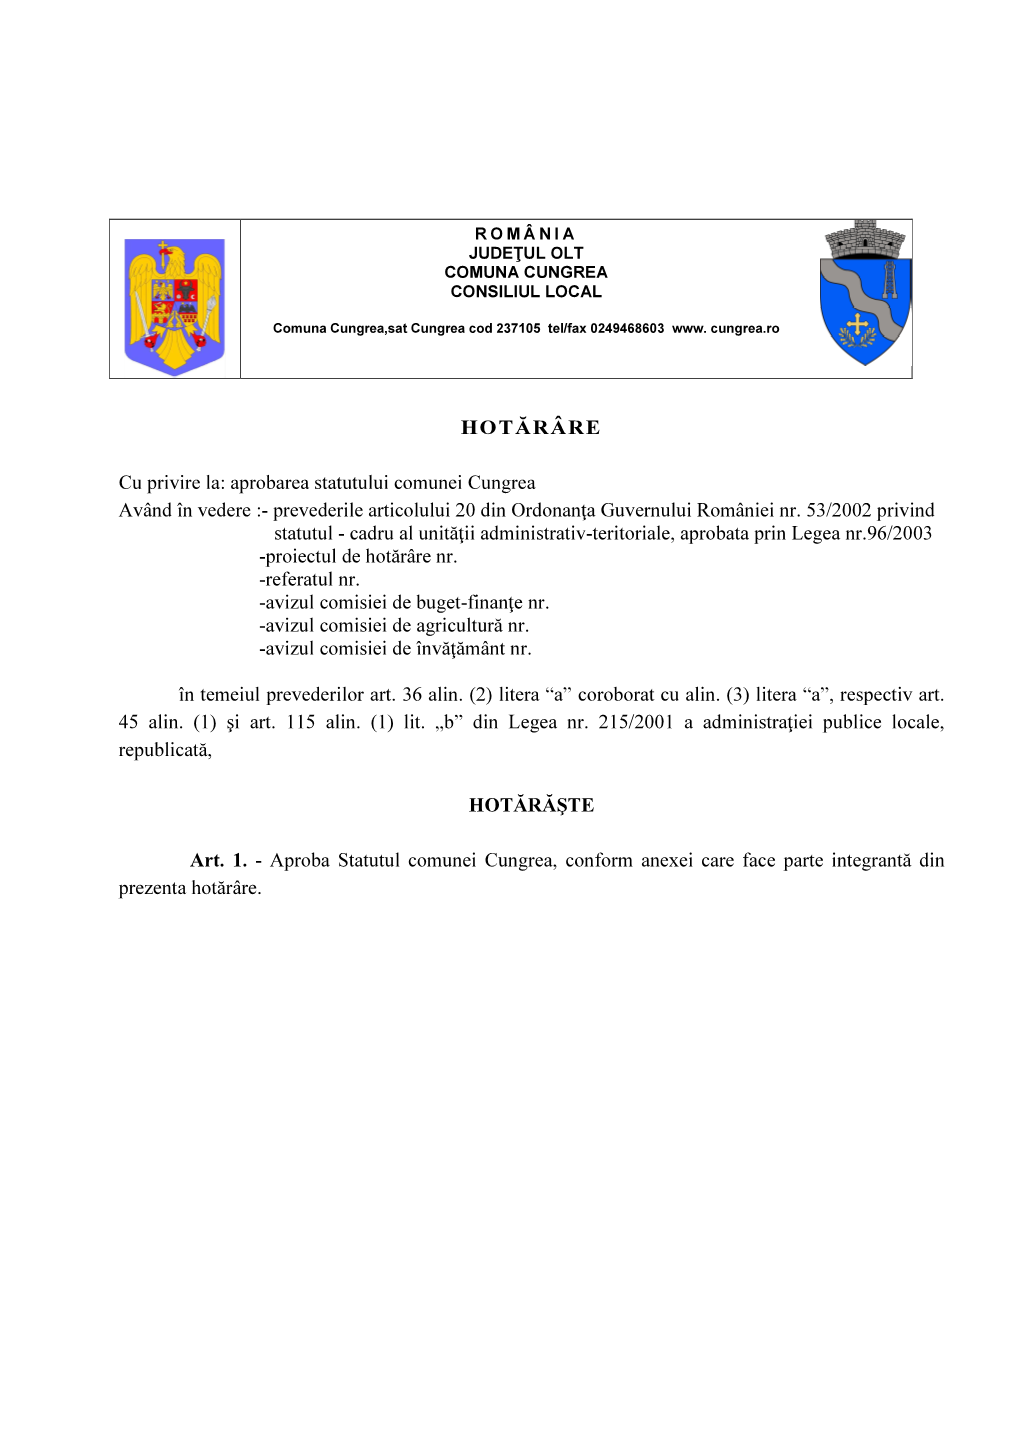 Aprobarea Statutului Comunei Cungrea Având În Vedere :- Prevederile Articolului 20 Din Ordonanţa Guvernului României Nr